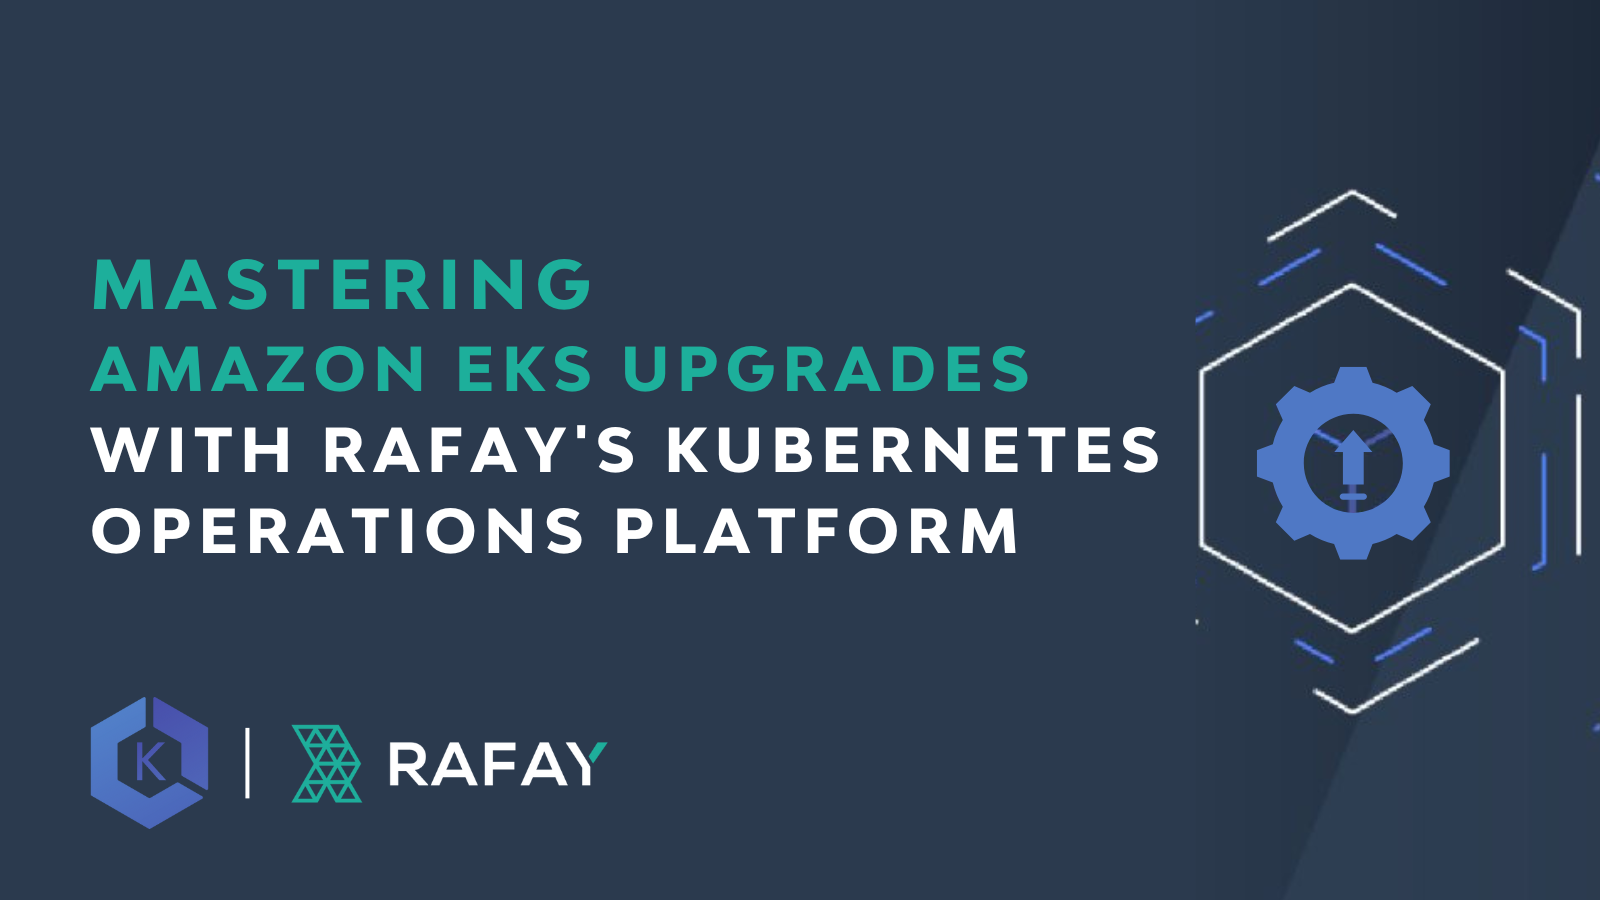 Image for Mastering Amazon EKS Upgrades with Rafay’s Kubernetes Operations Platform